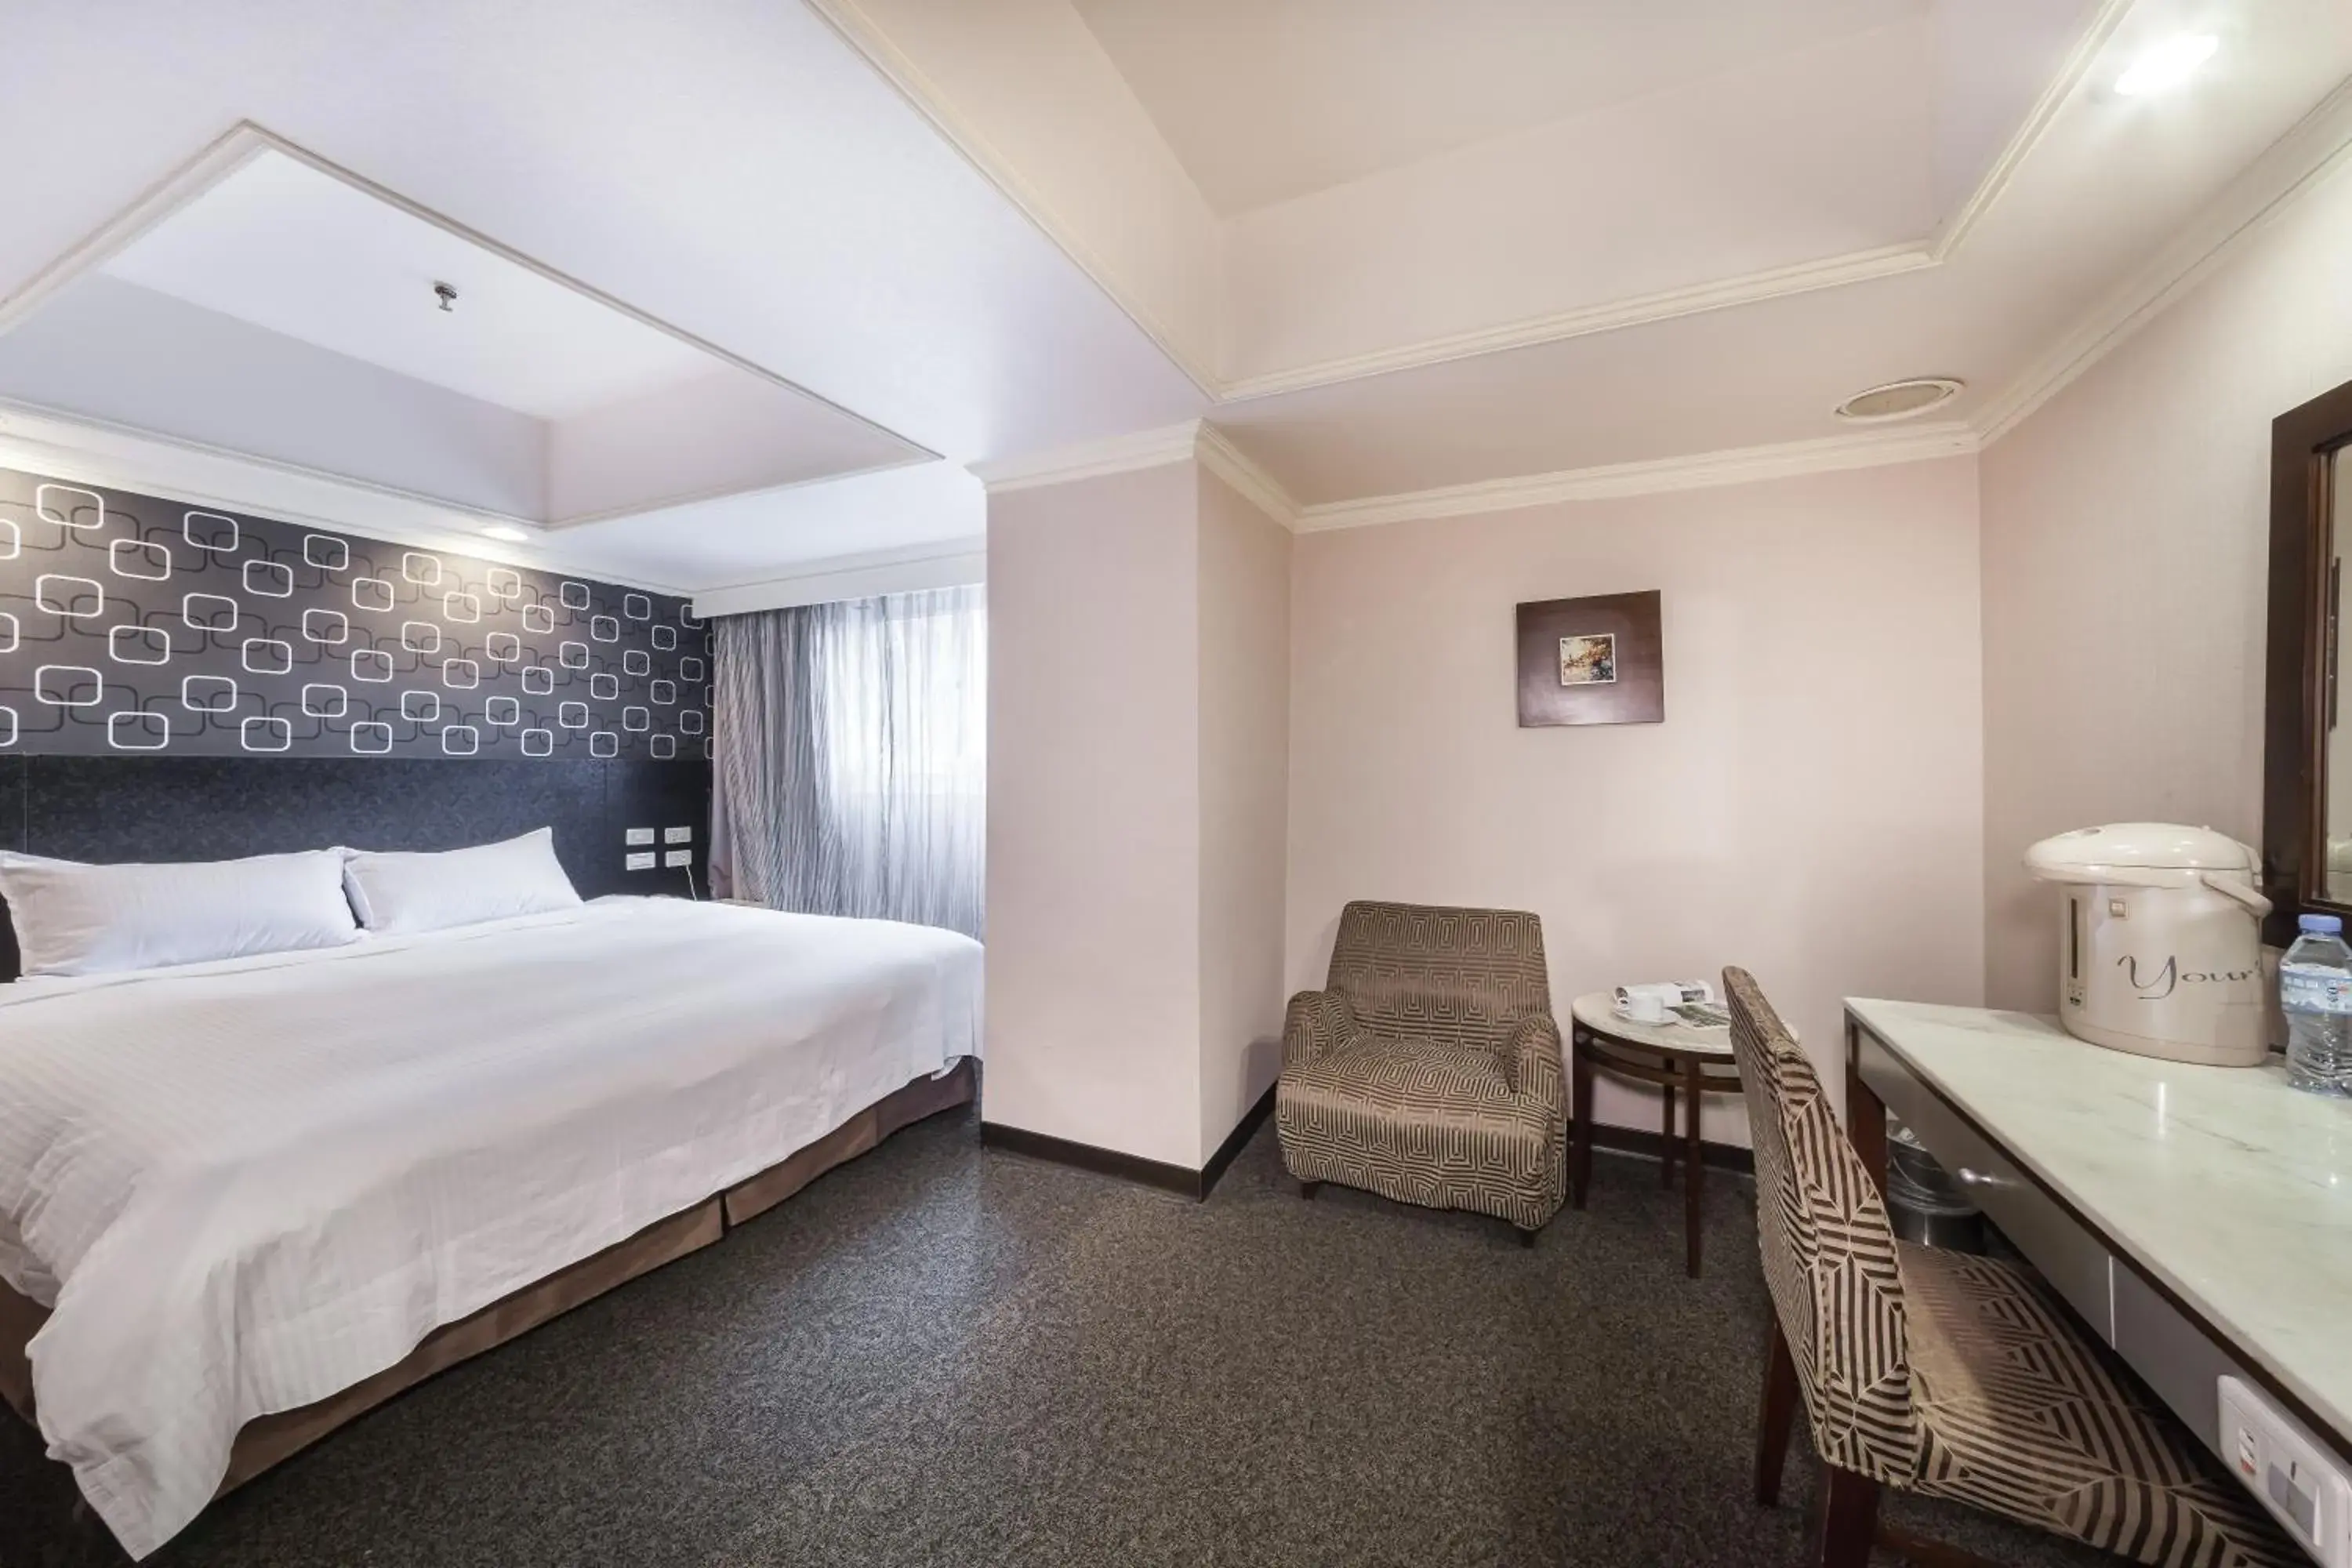 Bed in Ferrary Hotel